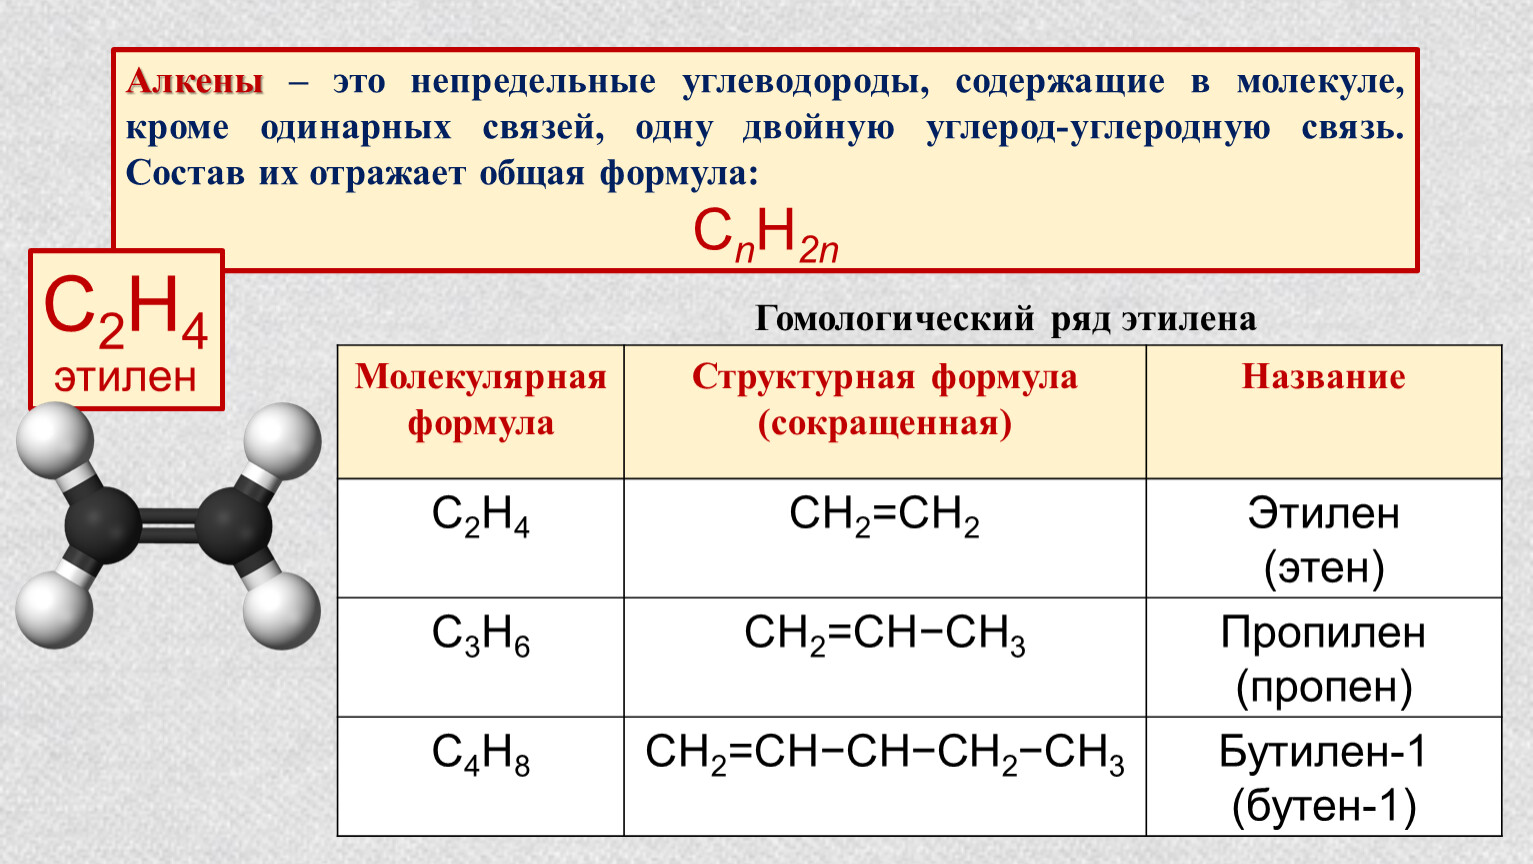 Строение алкадиенов и их особенности (cnh2n-2), схема